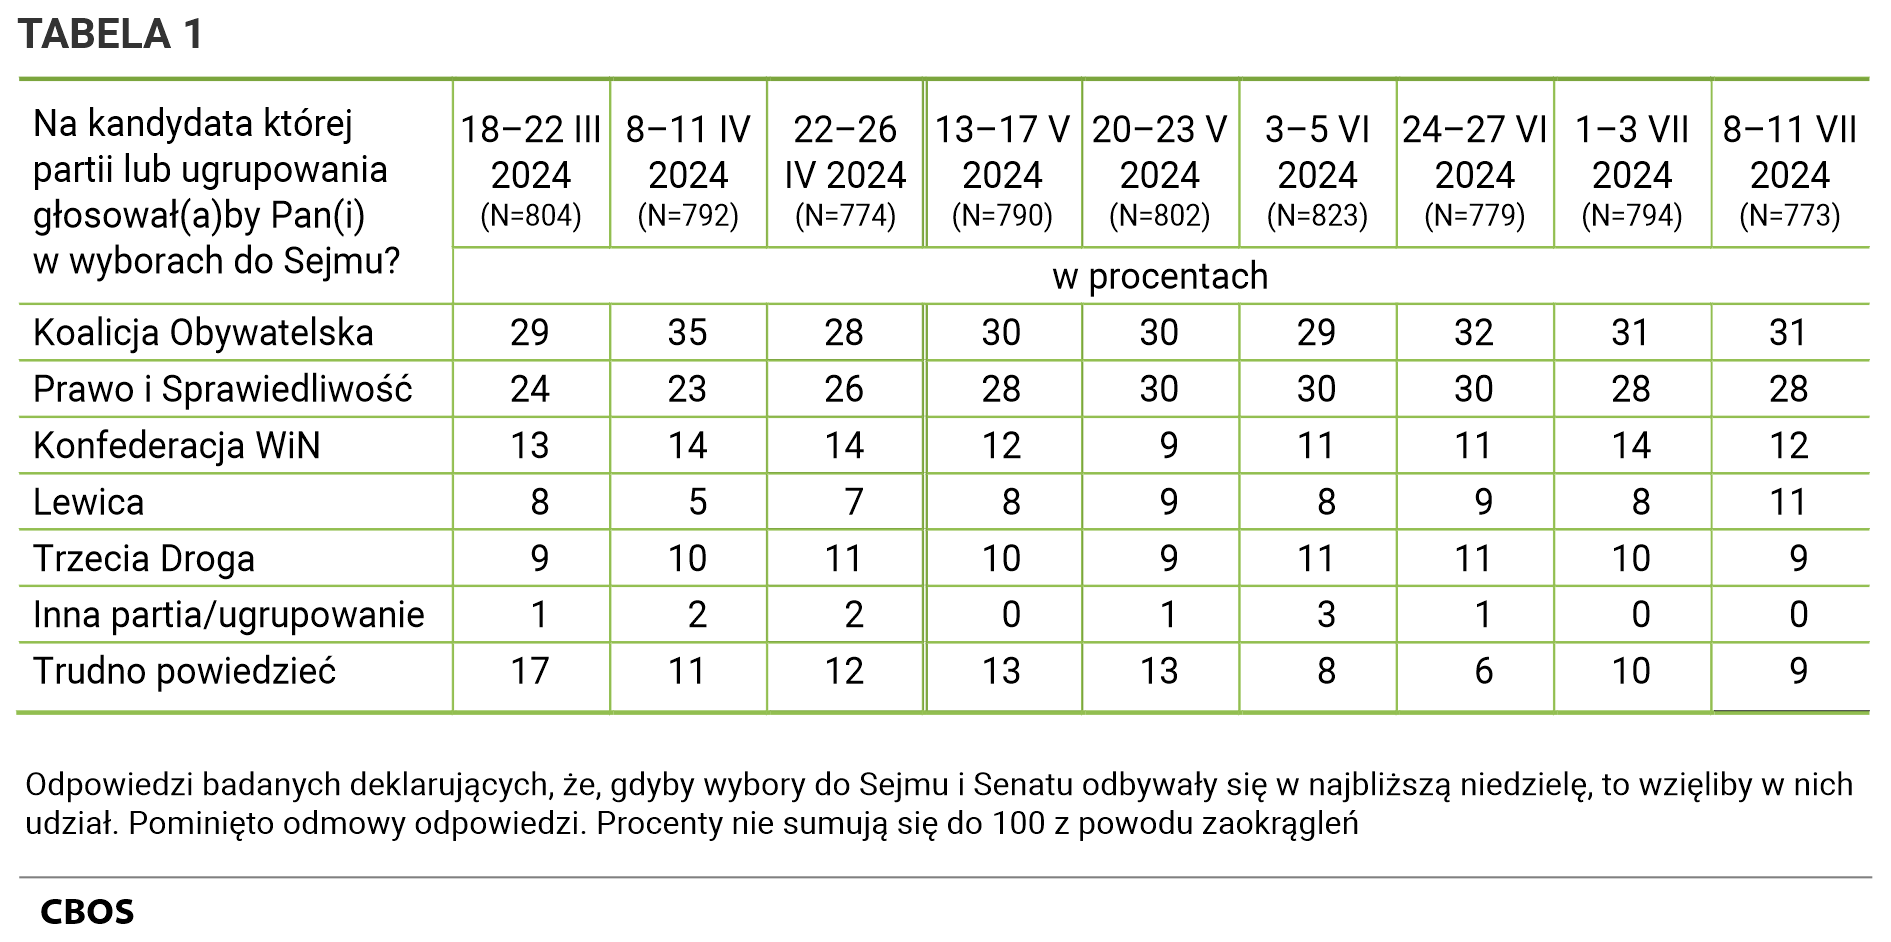 Tabela 1 Na kandydata której partii lub ugrupowania głosowałby Pan (głosowałaby Pani) w wyborach do Sejmu? Odpowiedzi według terminów badań badanych deklarujących, że gdyby wybory do Sejmu i Senatu odbywały się w najbliższą niedzielę, to wzięliby w nich udział.  - 18–22 III 2024 (N=804) Koalicja Obywatelska - 29%, Prawo i Sprawiedliwość - 24%, Konfederacja WiN - 13%, Lewica - 8%, Trzecia Droga - 9%, Inna partia/ugrupowanie - 1%, Trudno powiedzieć - 17%,   - 8–11 IV 2024 (N=792) Koalicja Obywatelska - 35%, Prawo i Sprawiedliwość - 23%, Konfederacja WiN - 14%, Lewica - 5%, Trzecia Droga - 10%, Inna partia/ugrupowanie - 2%, Trudno powiedzieć - 11%,   - 22–26 IV 2024 (N=774) Koalicja Obywatelska - 28%, Prawo i Sprawiedliwość - 26%, Konfederacja WiN - 14%, Lewica - 7%, Trzecia Droga - 11%, Inna partia/ugrupowanie - 2%, Trudno powiedzieć - 12%,   - 13–17 V 2024 (N=790) Koalicja Obywatelska - 30%, Prawo i Sprawiedliwość - 28%, Konfederacja WiN - 12%, Lewica - 8%, Trzecia Droga - 10%, Inna partia/ugrupowanie - 0%, Trudno powiedzieć - 13%,   - 20–23 V 2024 (N=802) Koalicja Obywatelska - 30%, Prawo i Sprawiedliwość - 30%, Konfederacja WiN - 9%, Lewica - 9%, Trzecia Droga - 9%, Inna partia/ugrupowanie - 1%, Trudno powiedzieć - 13%,   - 3–5 VI 2024 (N=823) Koalicja Obywatelska - 29%, Prawo i Sprawiedliwość - 30%, Konfederacja WiN - 11%, Lewica - 8%, Trzecia Droga - 11%, Inna partia/ugrupowanie - 3%, Trudno powiedzieć - 8%,   - 24–27 VI 2024 (N=779) Koalicja Obywatelska - 32%, Prawo i Sprawiedliwość - 30%, Konfederacja WiN - 11%, Lewica - 9%, Trzecia Droga - 11%, Inna partia/ugrupowanie - 1%, Trudno powiedzieć - 6%,   - 1–3 VII 2024 (N=794) Koalicja Obywatelska - 31%, Prawo i Sprawiedliwość - 28%, Konfederacja WiN - 14%, Lewica - 8%, Trzecia Droga - 10%, Inna partia/ugrupowanie - 0%, Trudno powiedzieć - 10%,   - 8–11 VII 2024 (N=773) Koalicja Obywatelska - 31%, Prawo i Sprawiedliwość - 28%, Konfederacja WiN - 12%, Lewica - 11%, Trzecia Droga - 9%, Inna partia/ugrupowanie - 0%, Trudno powiedzieć - 9%.